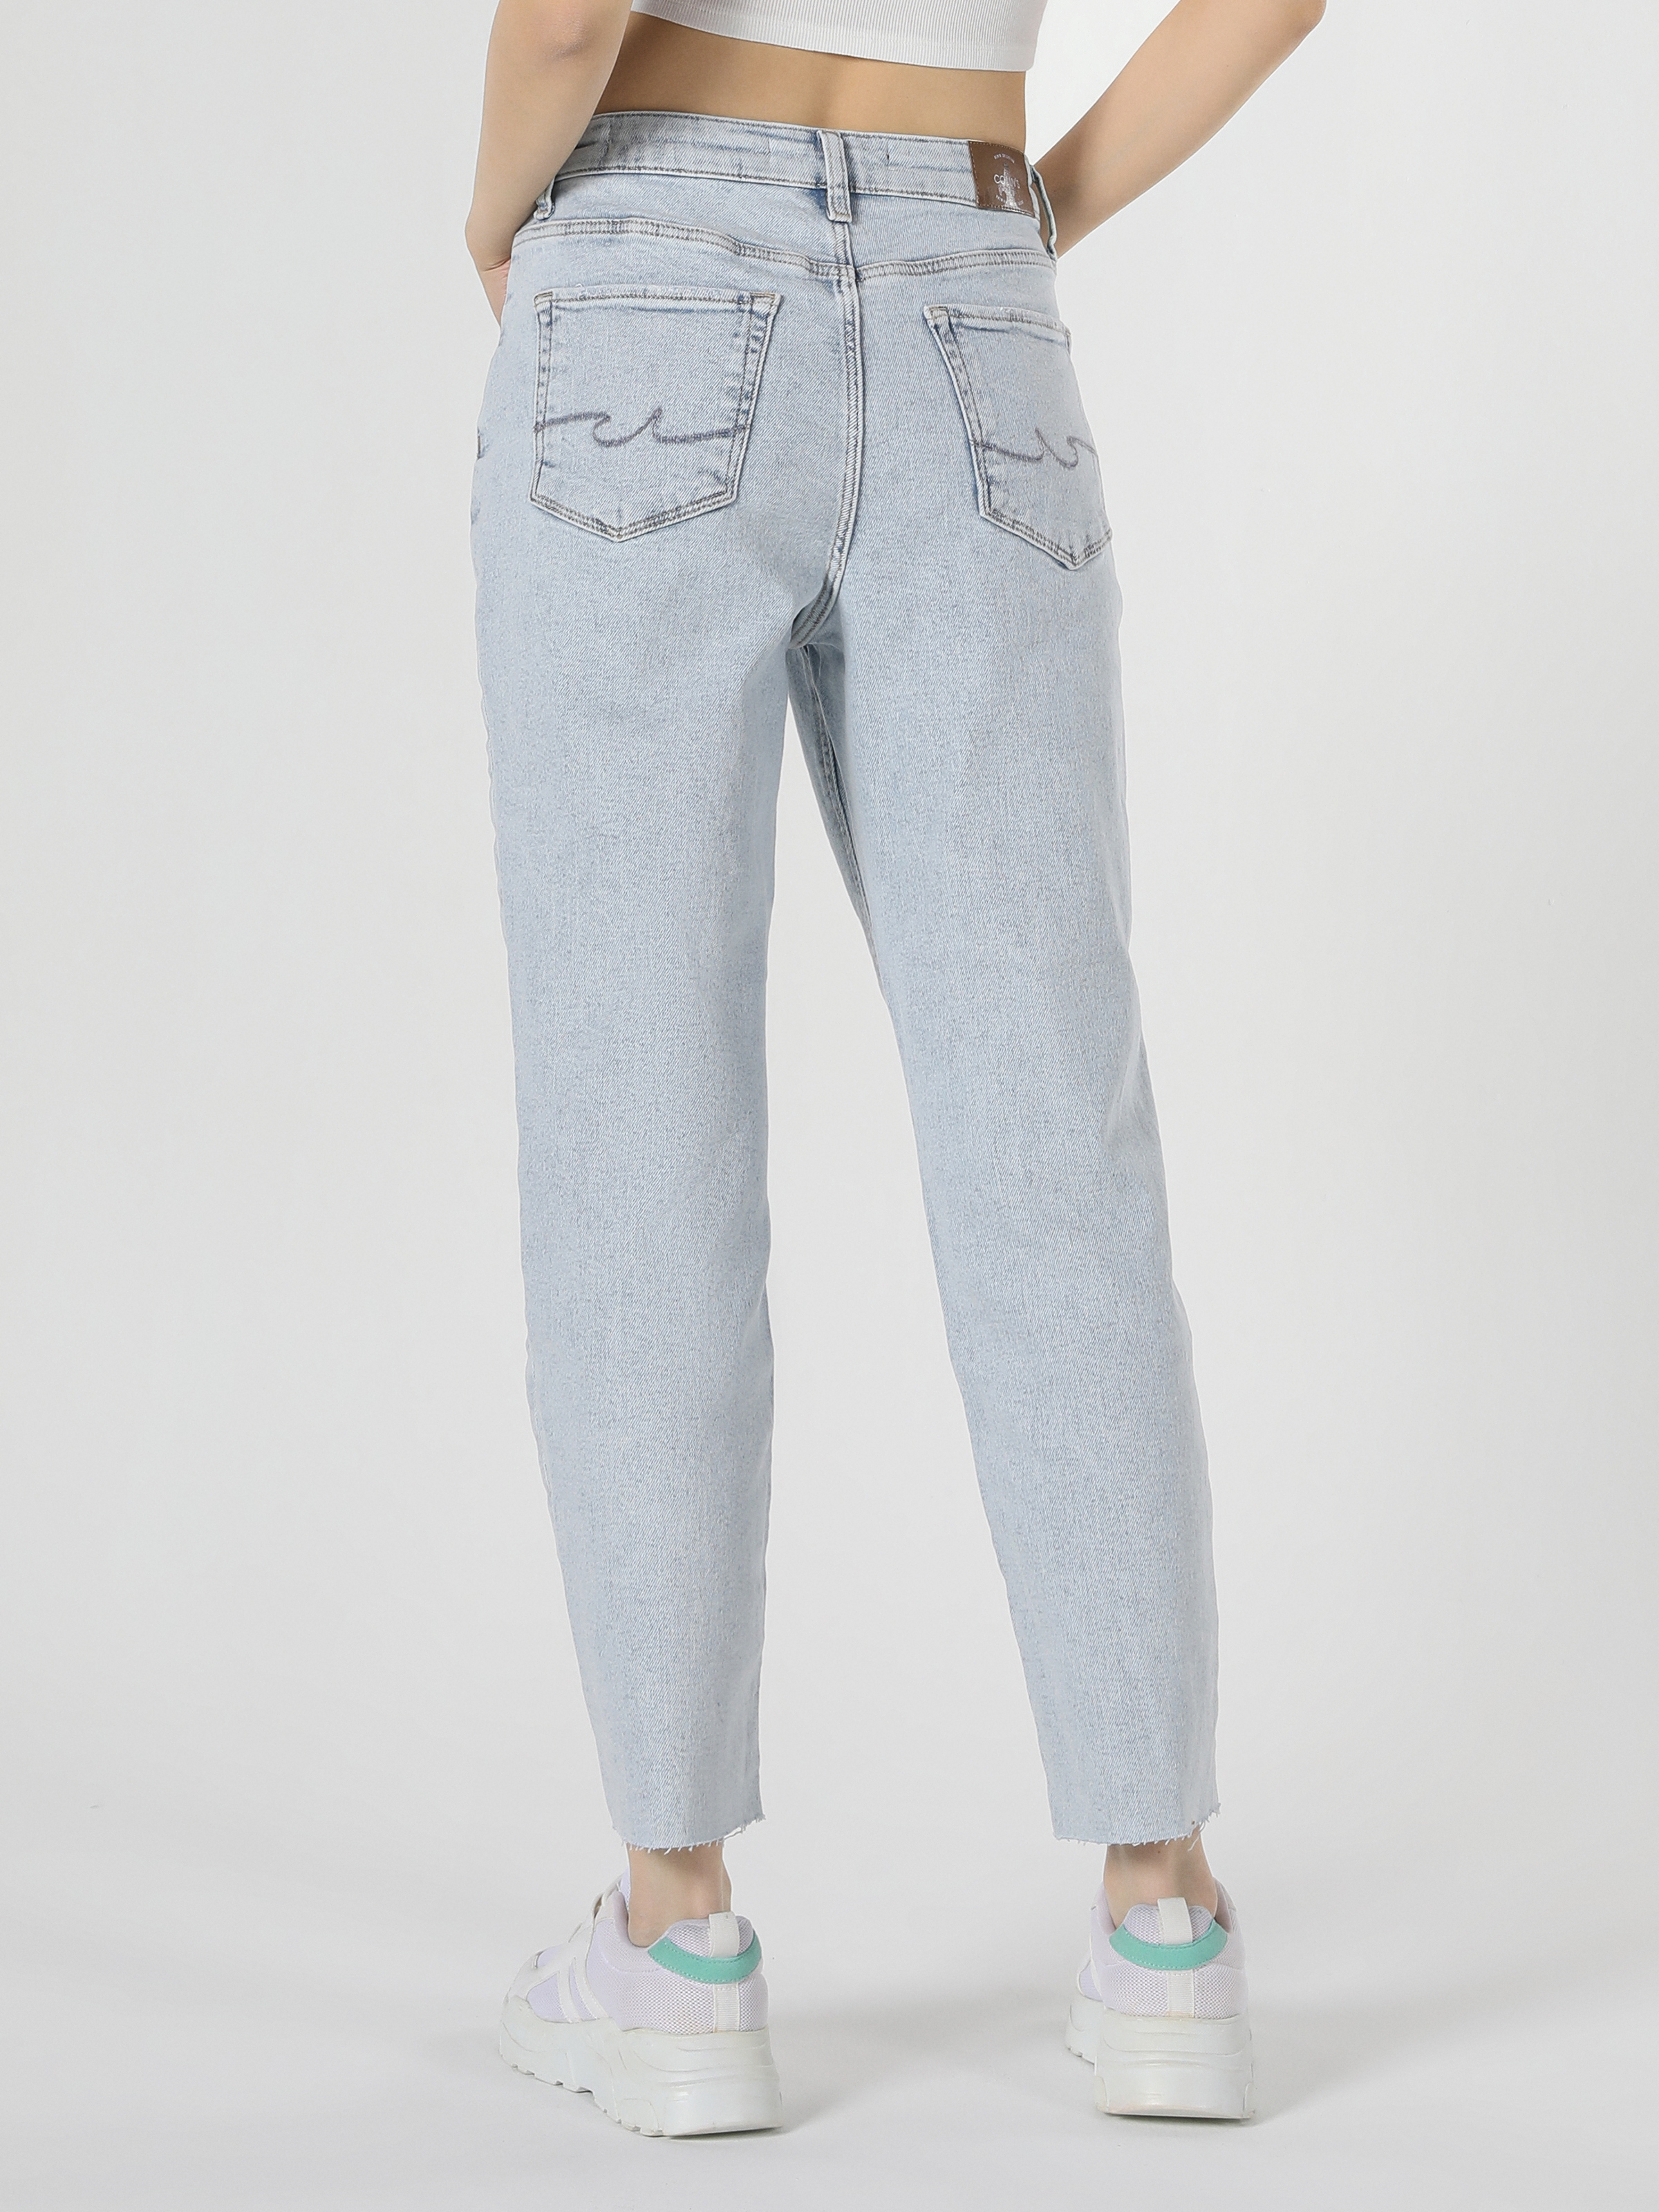 Afficher les détails de Pantalon Femme 891 Maya Coupe Slim Taille Normale Jean